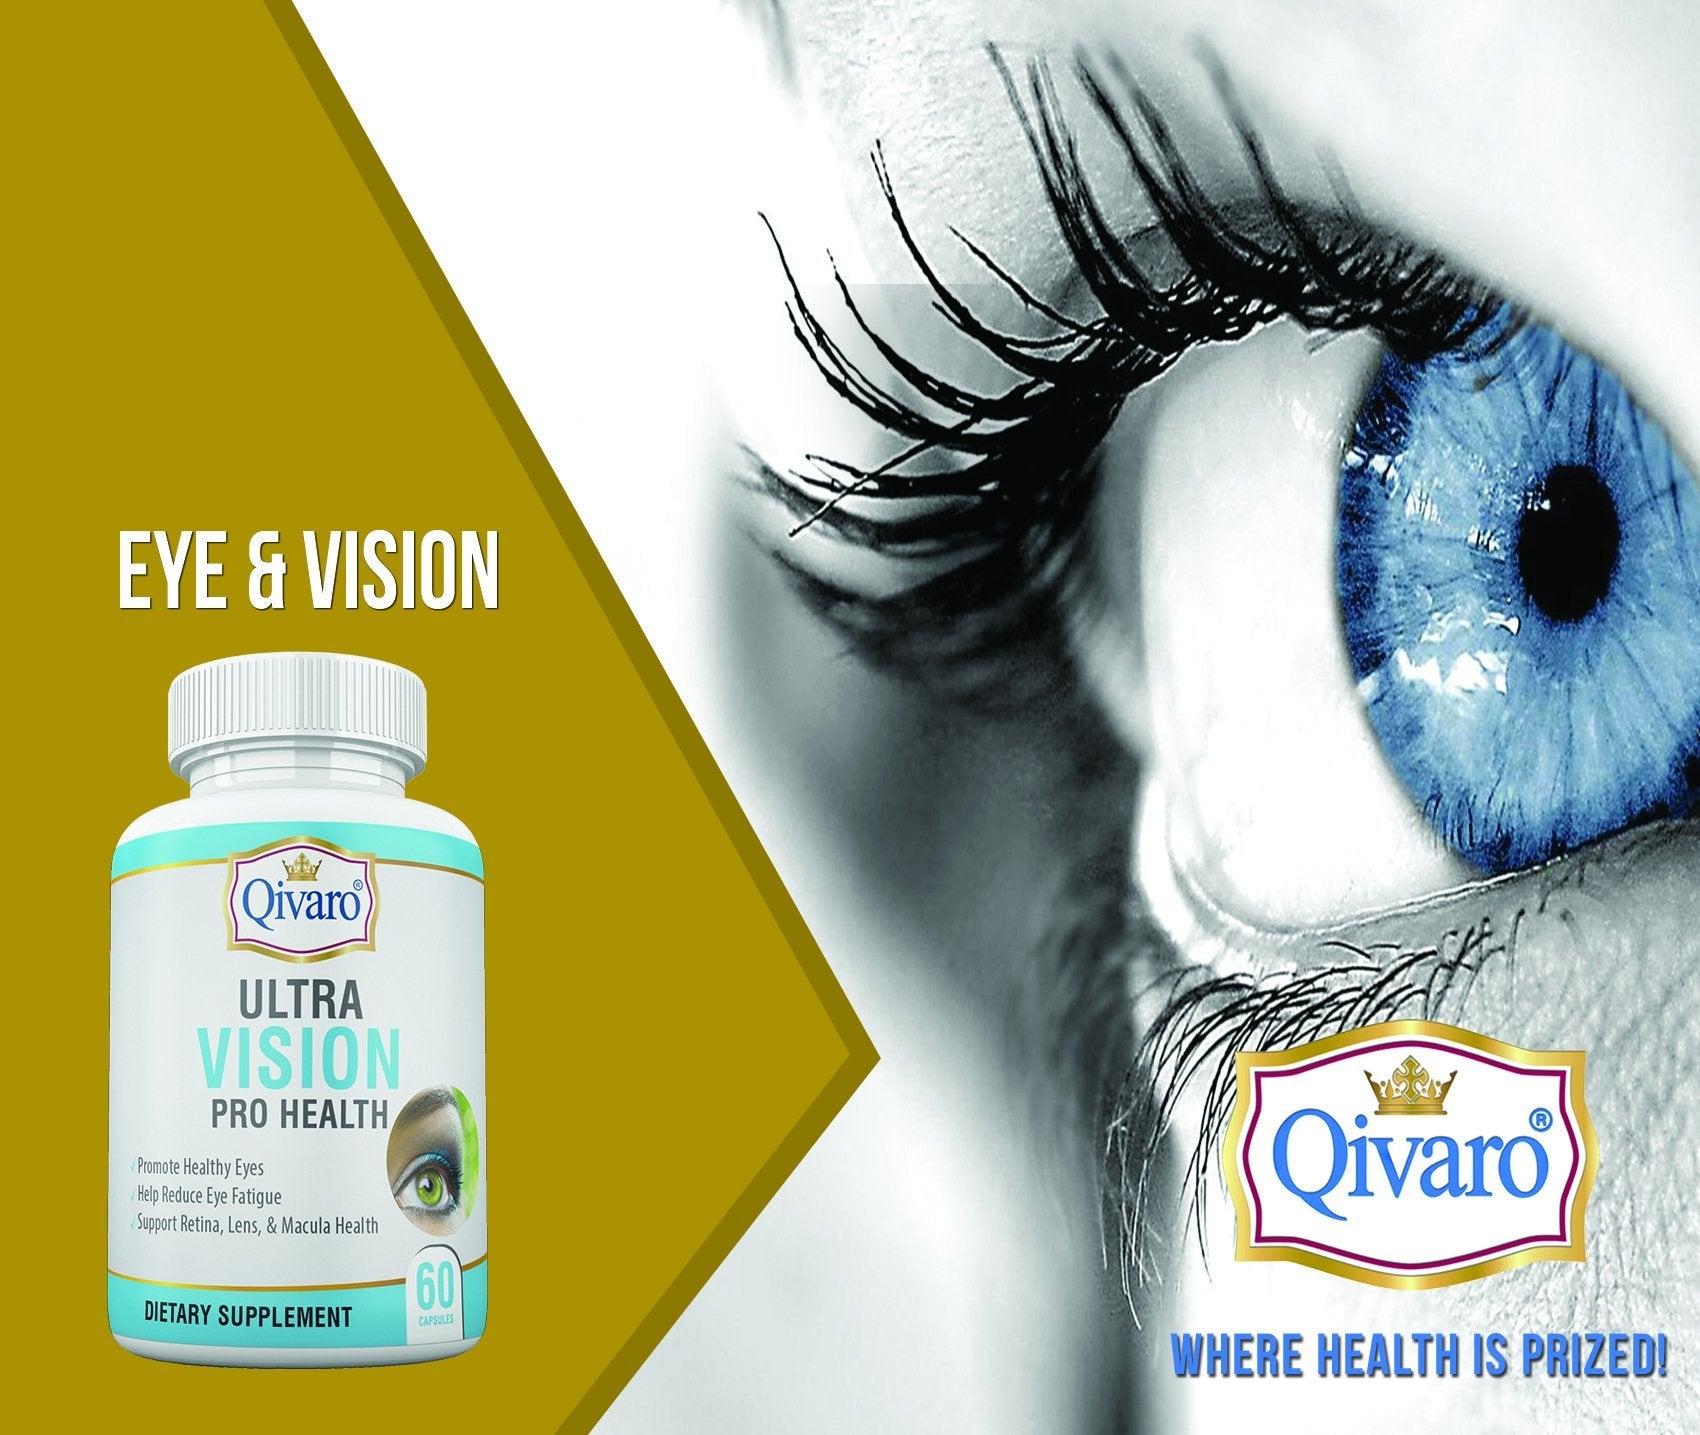 Eye & Vision | Qivaro USA